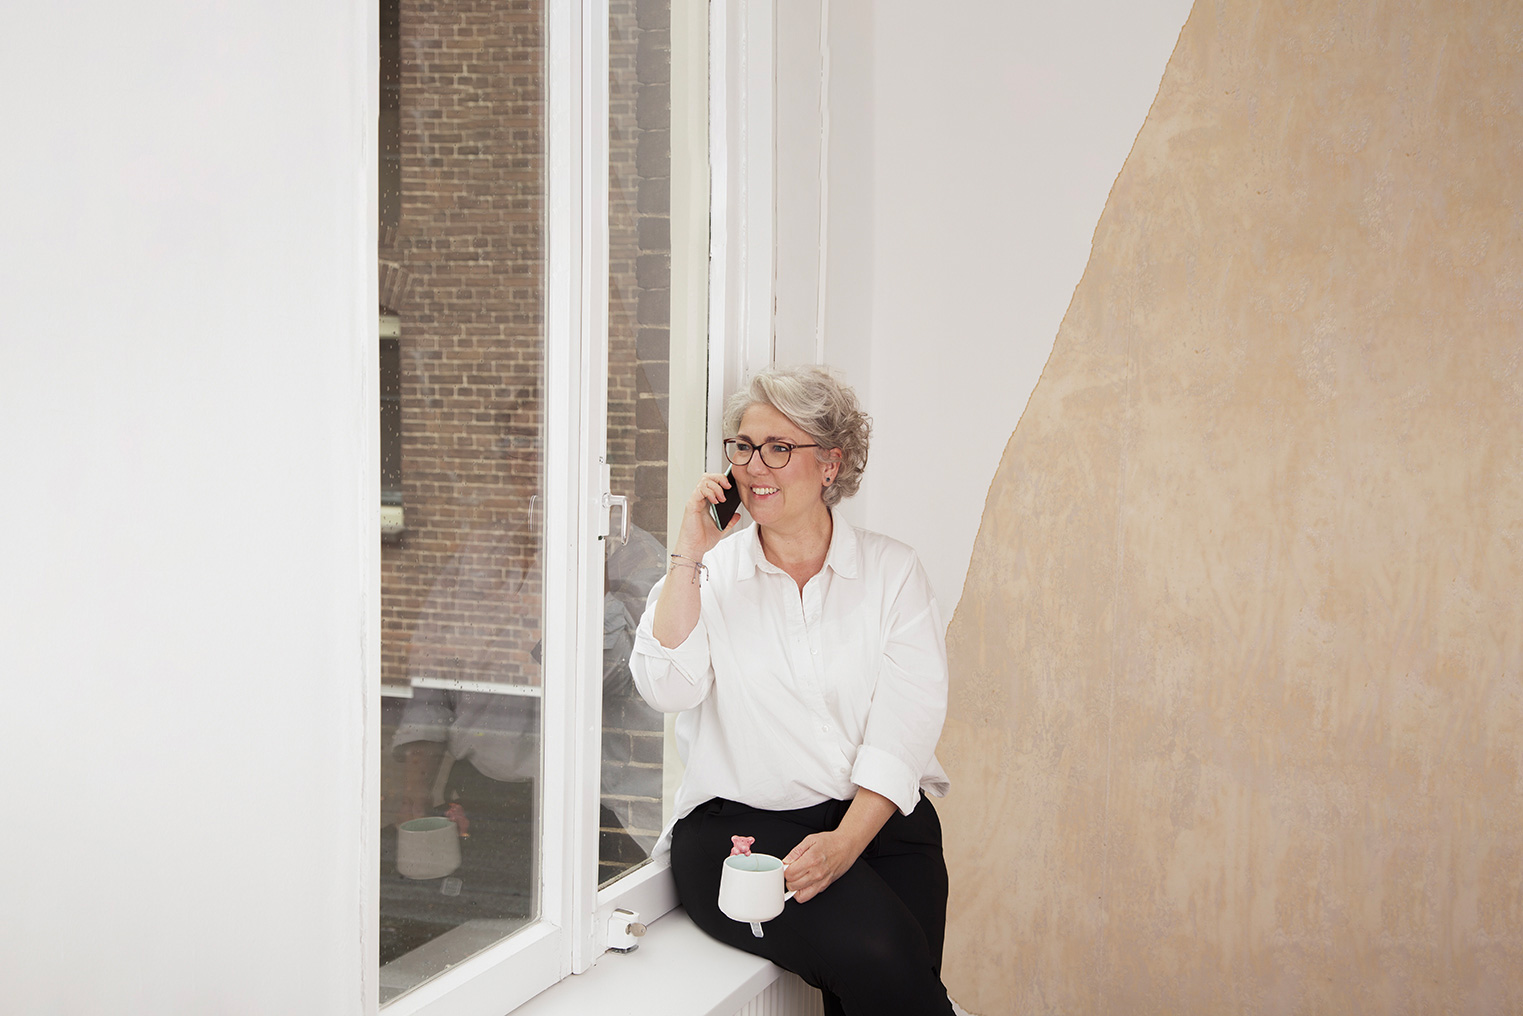 Fotografe Katja Diroen in haar studio